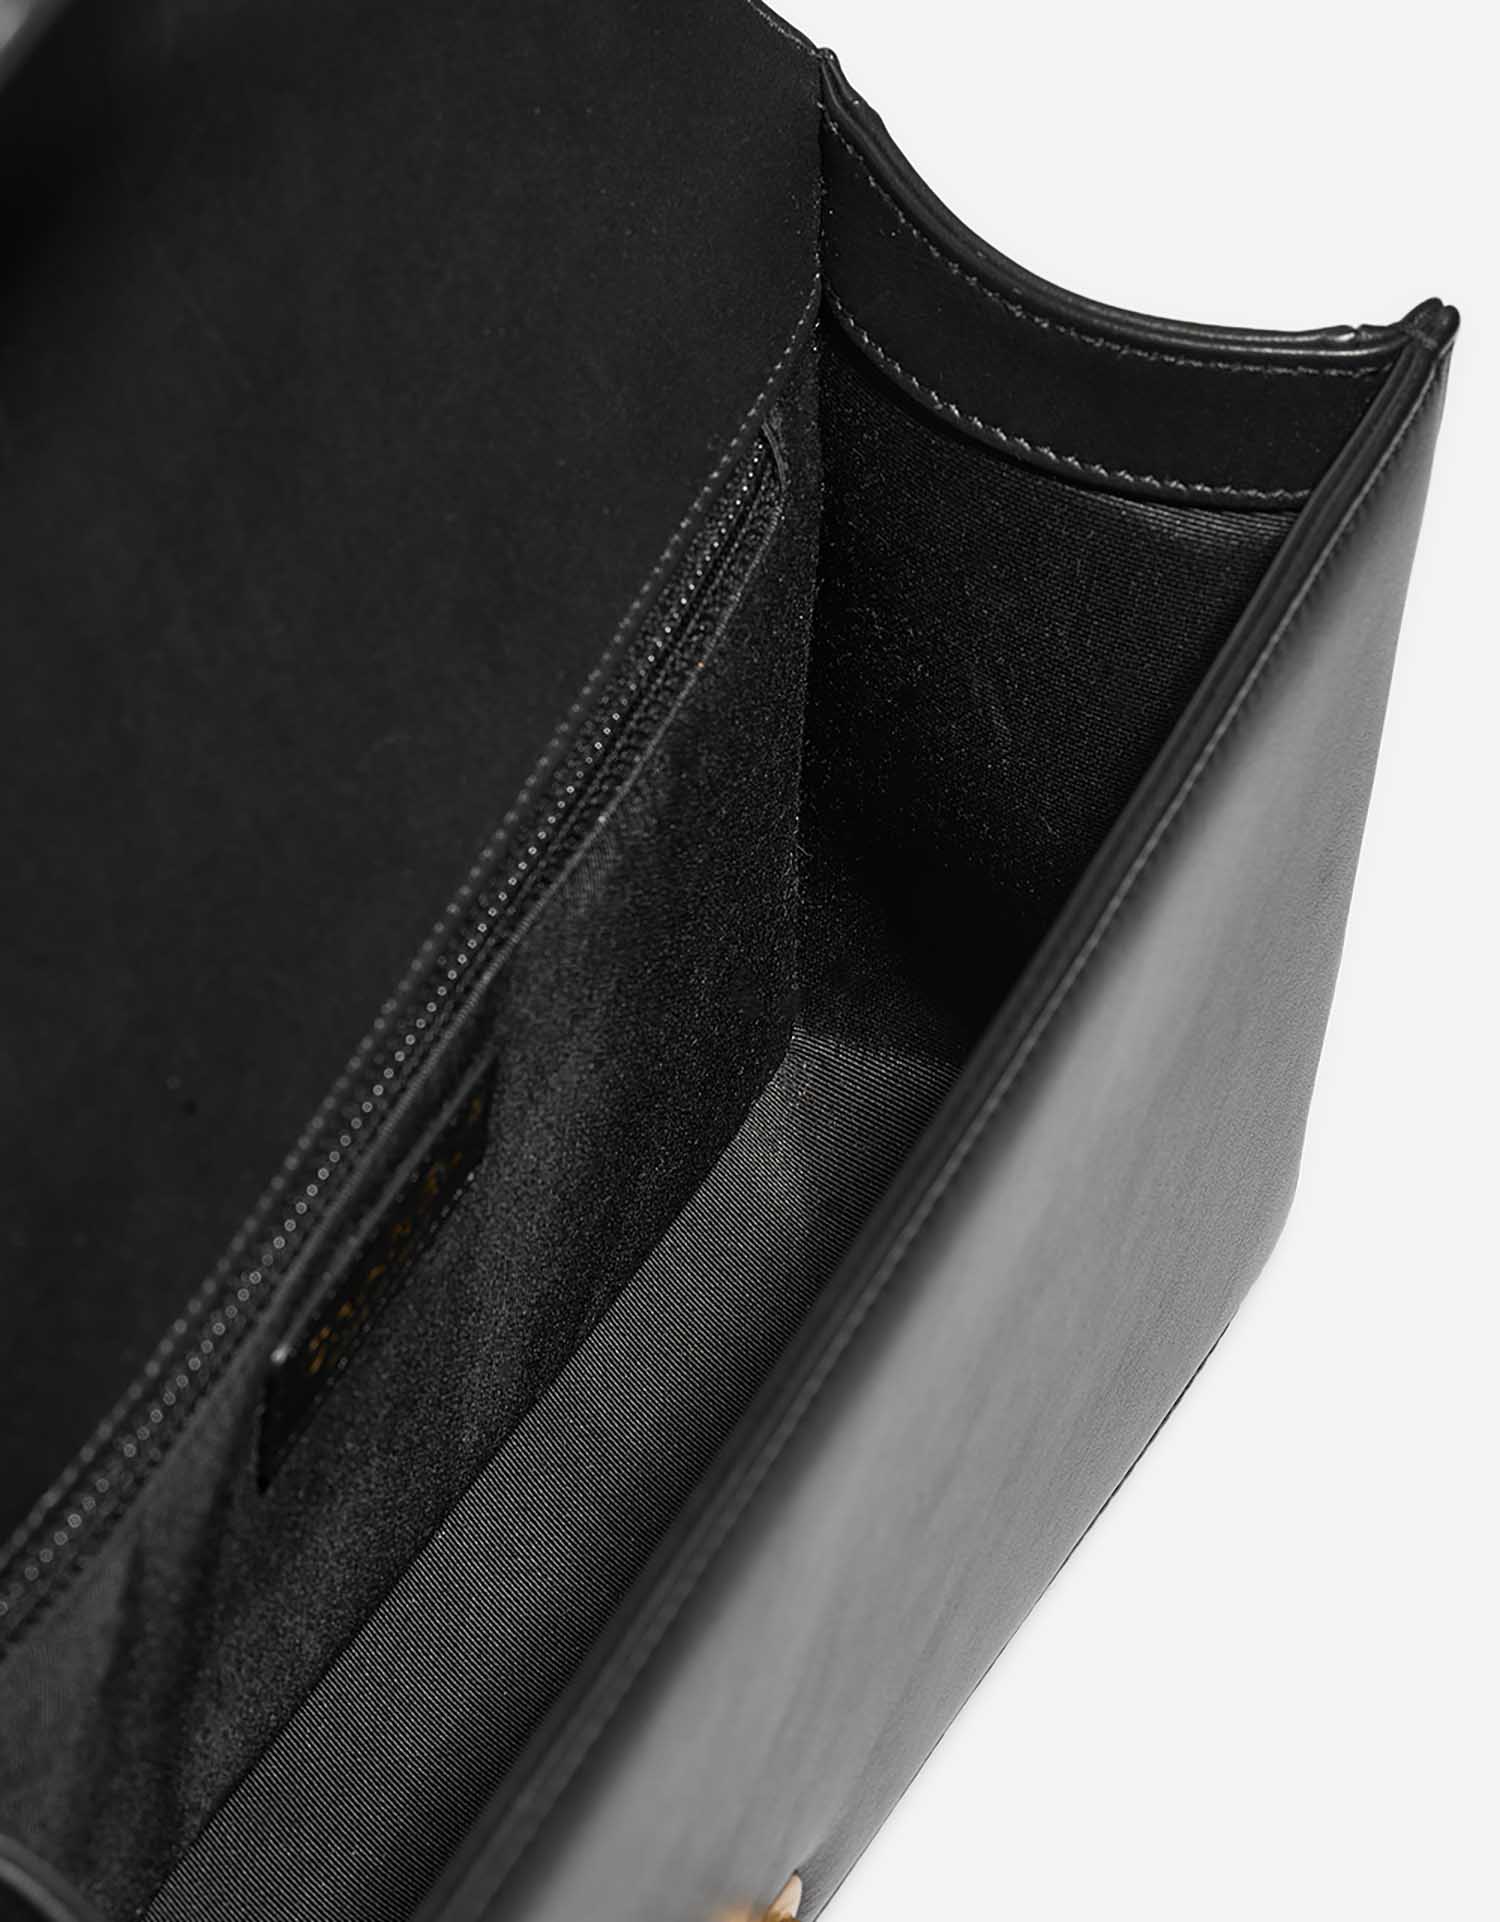 Chanel Boy NewMedium Black Inside | Verkaufen Sie Ihre Designer-Tasche auf Saclab.com